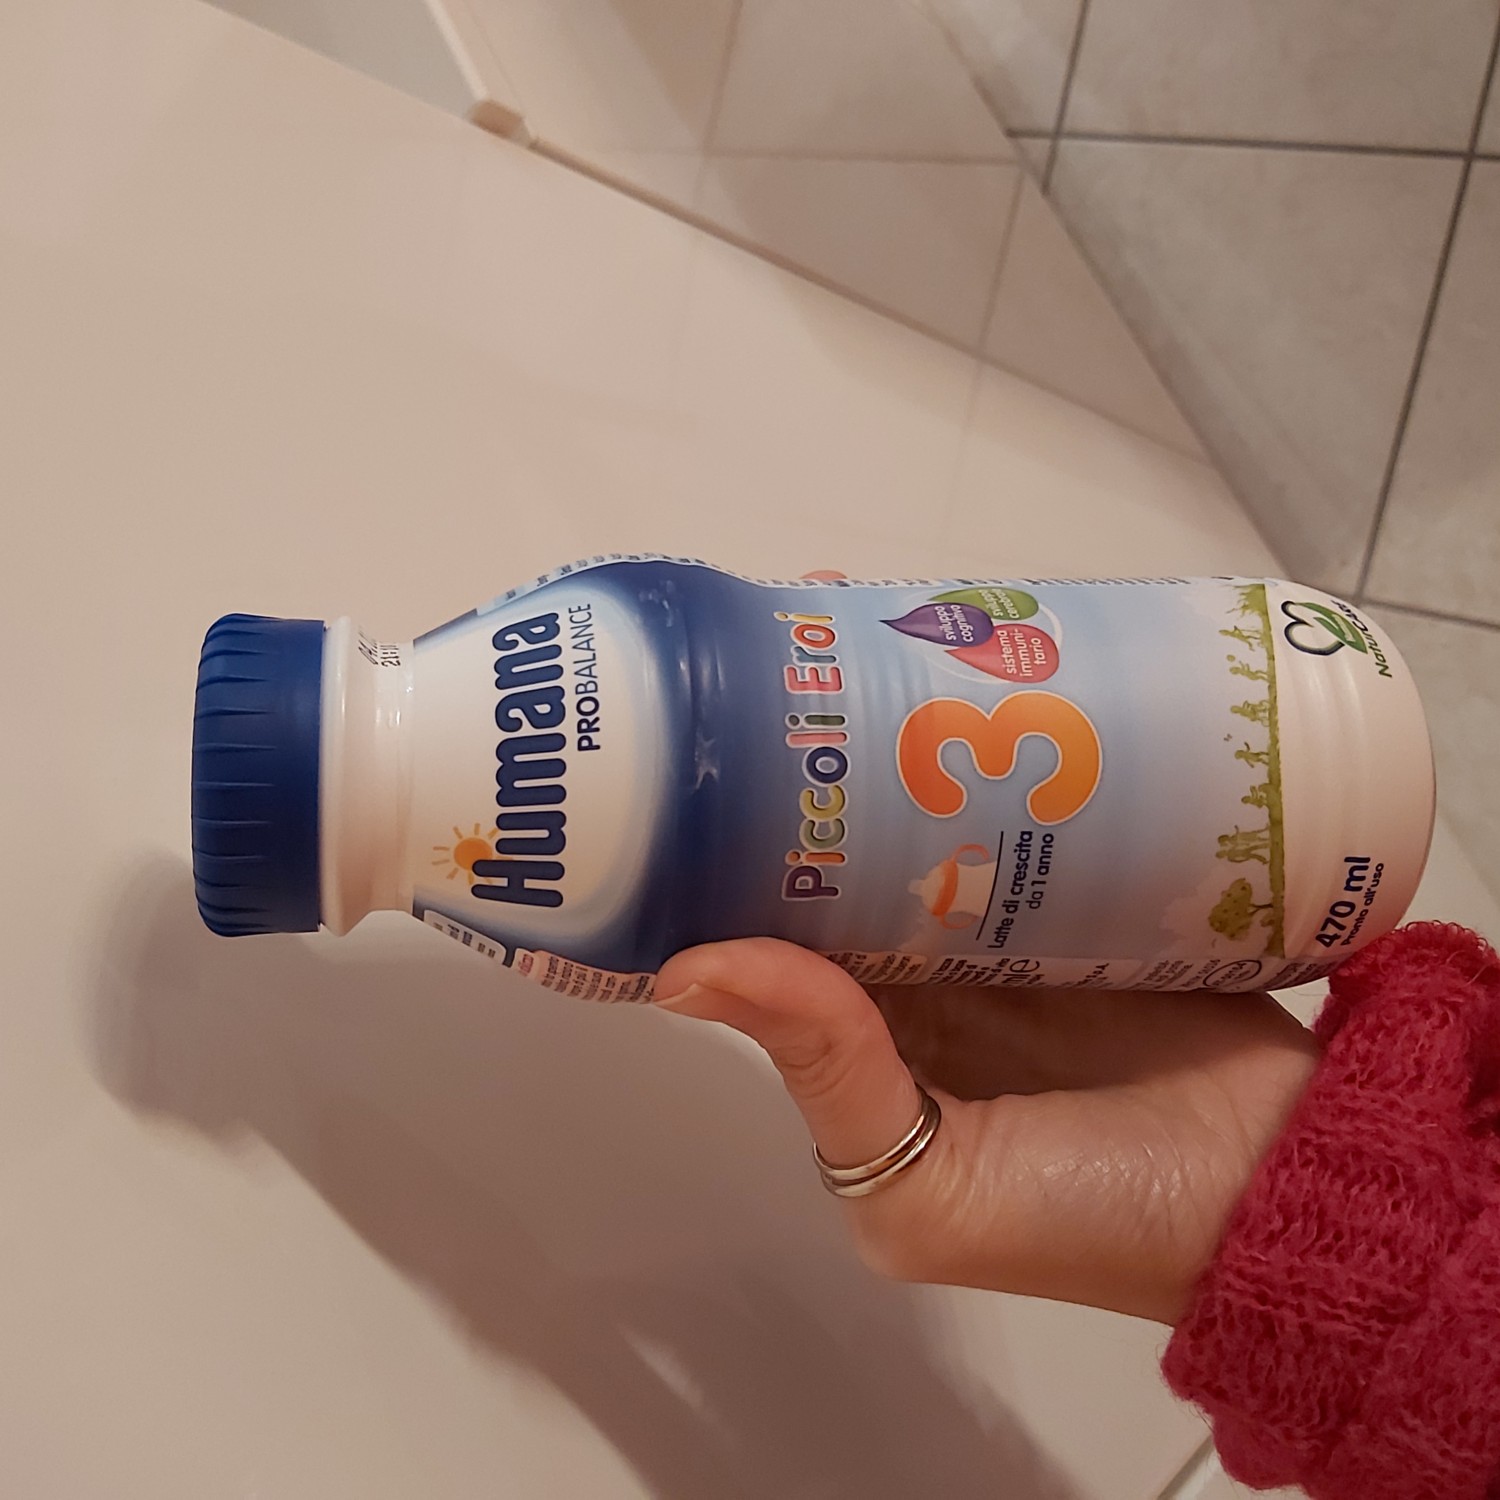 Humana 3 Latte Liquido 470 ml 